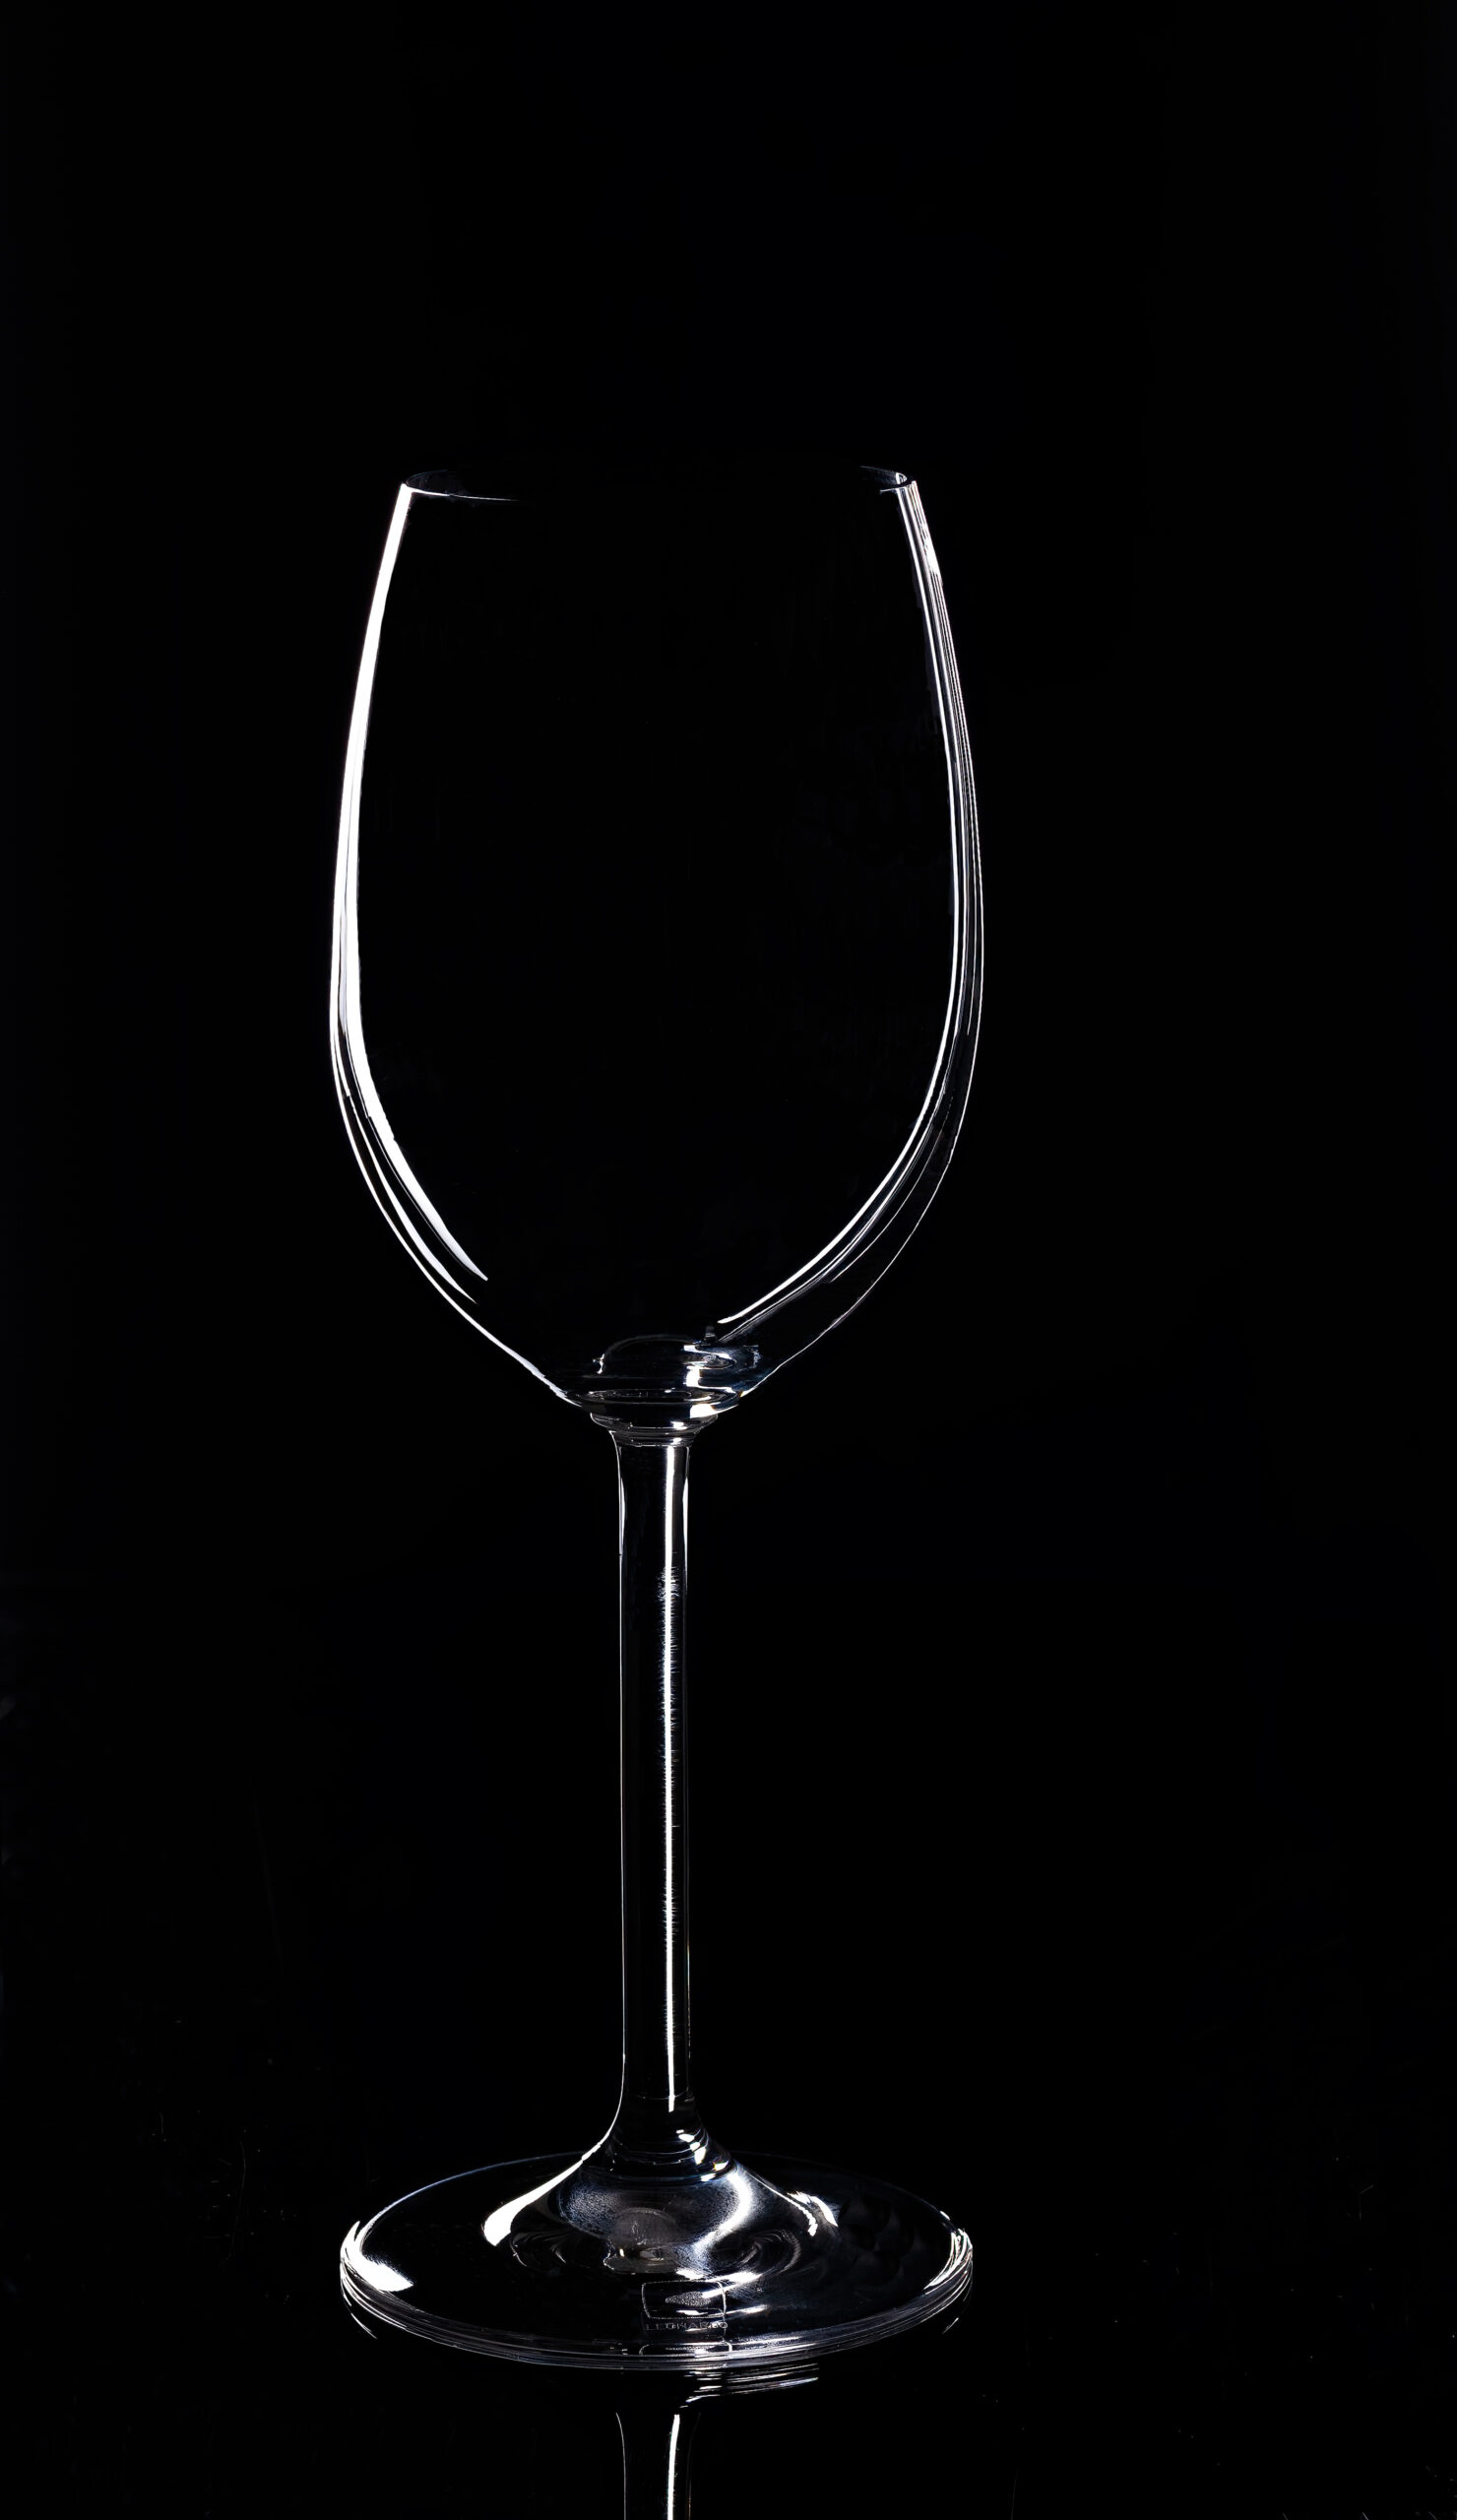 Foto von einem Weinglas vor einem schwarzen Hintergrund.